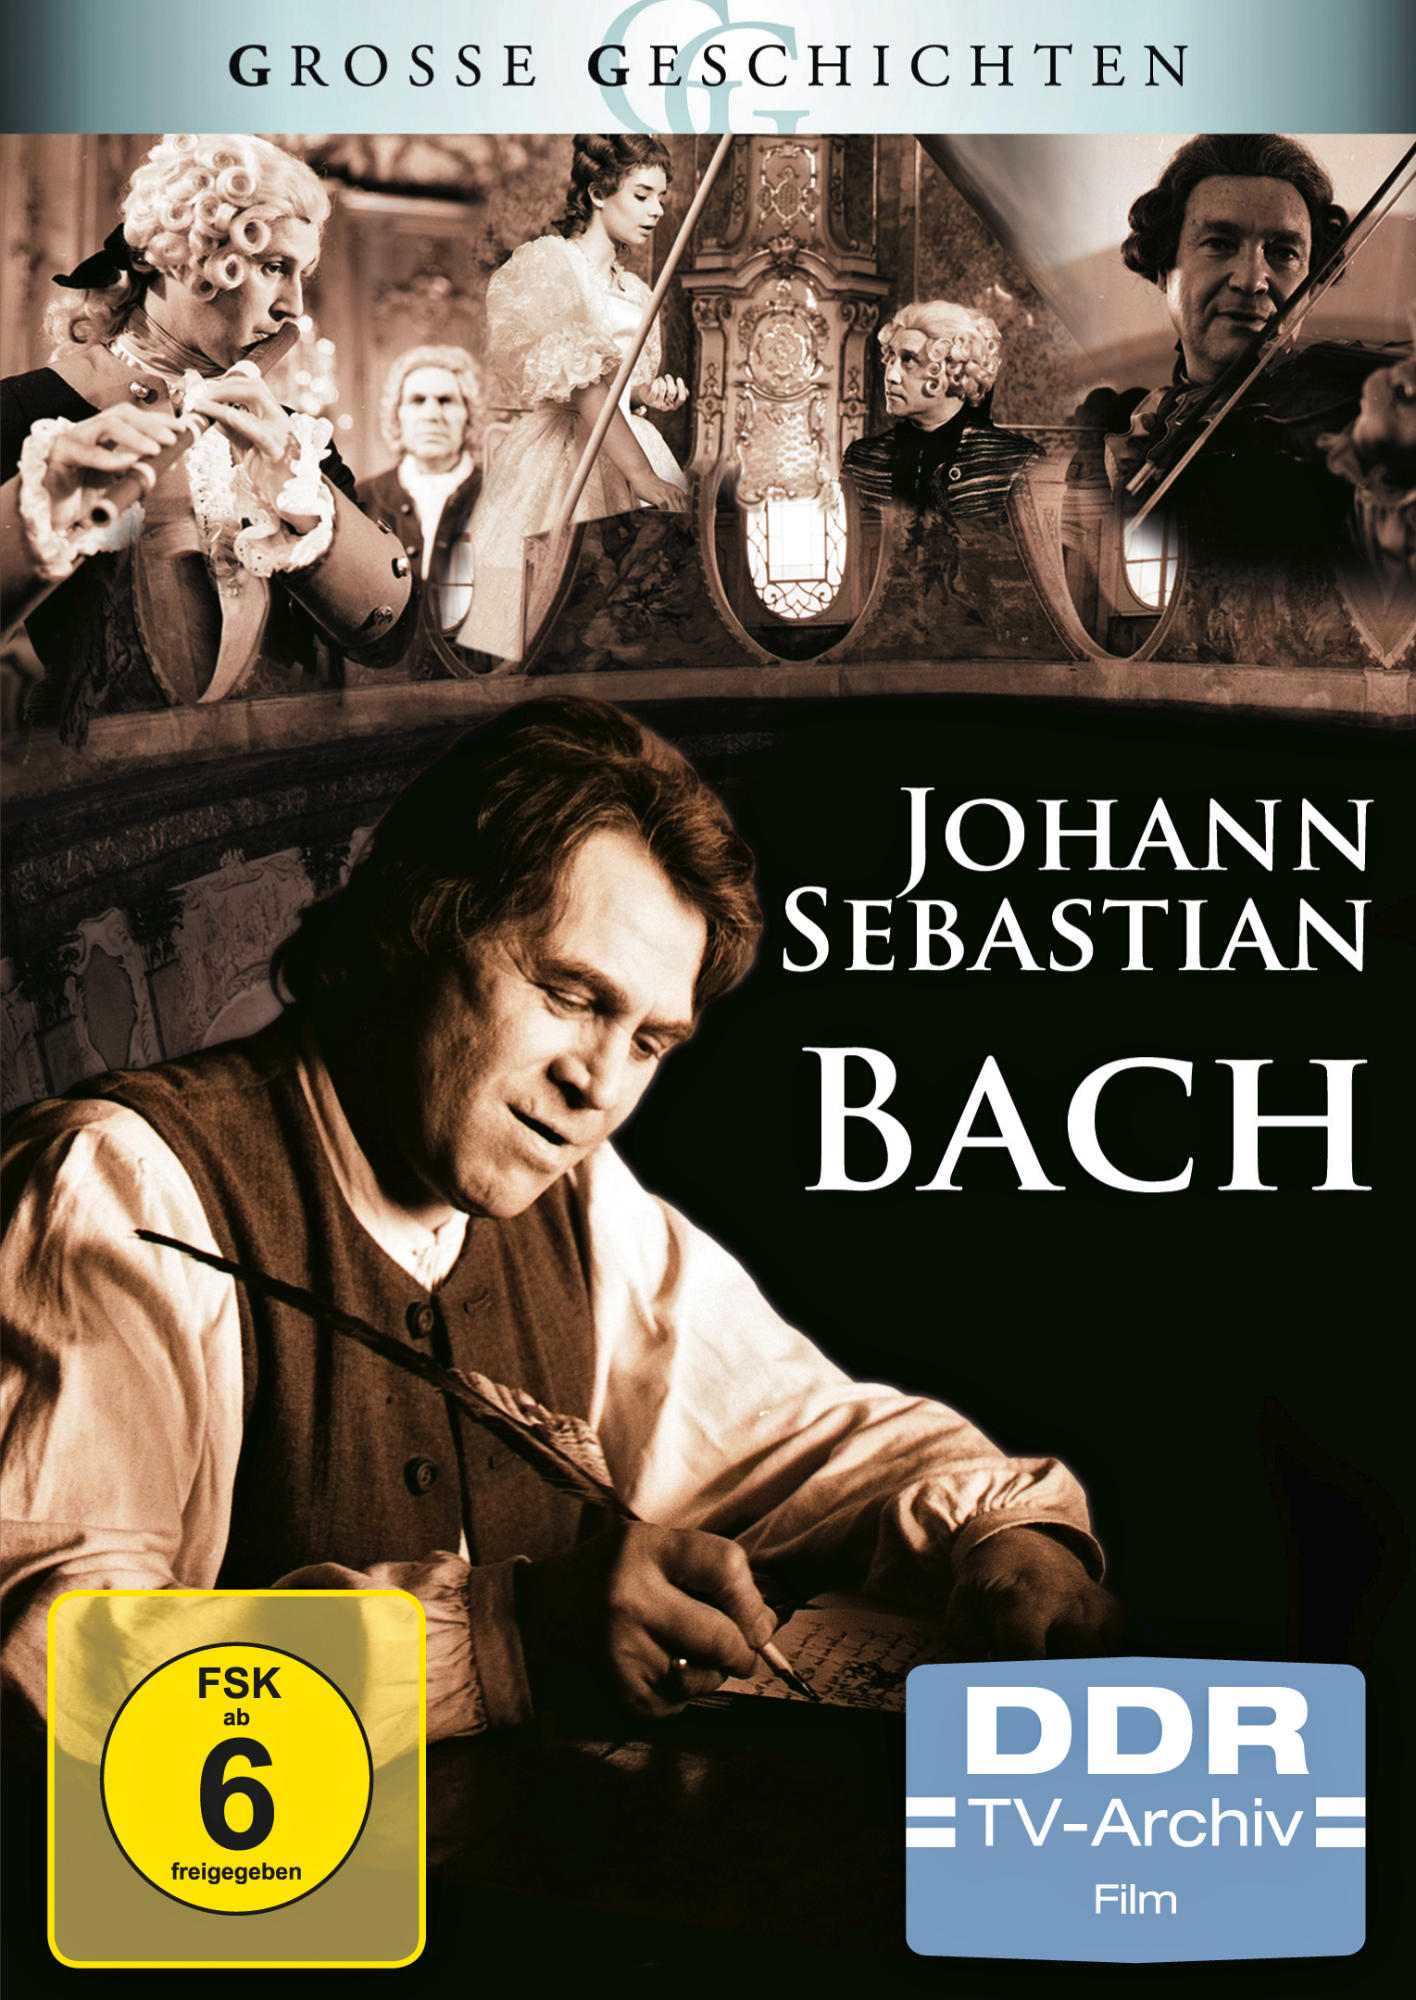 SEBASTIAN (GROSSE DVD BACH JOHANN GESCHICHTEN)